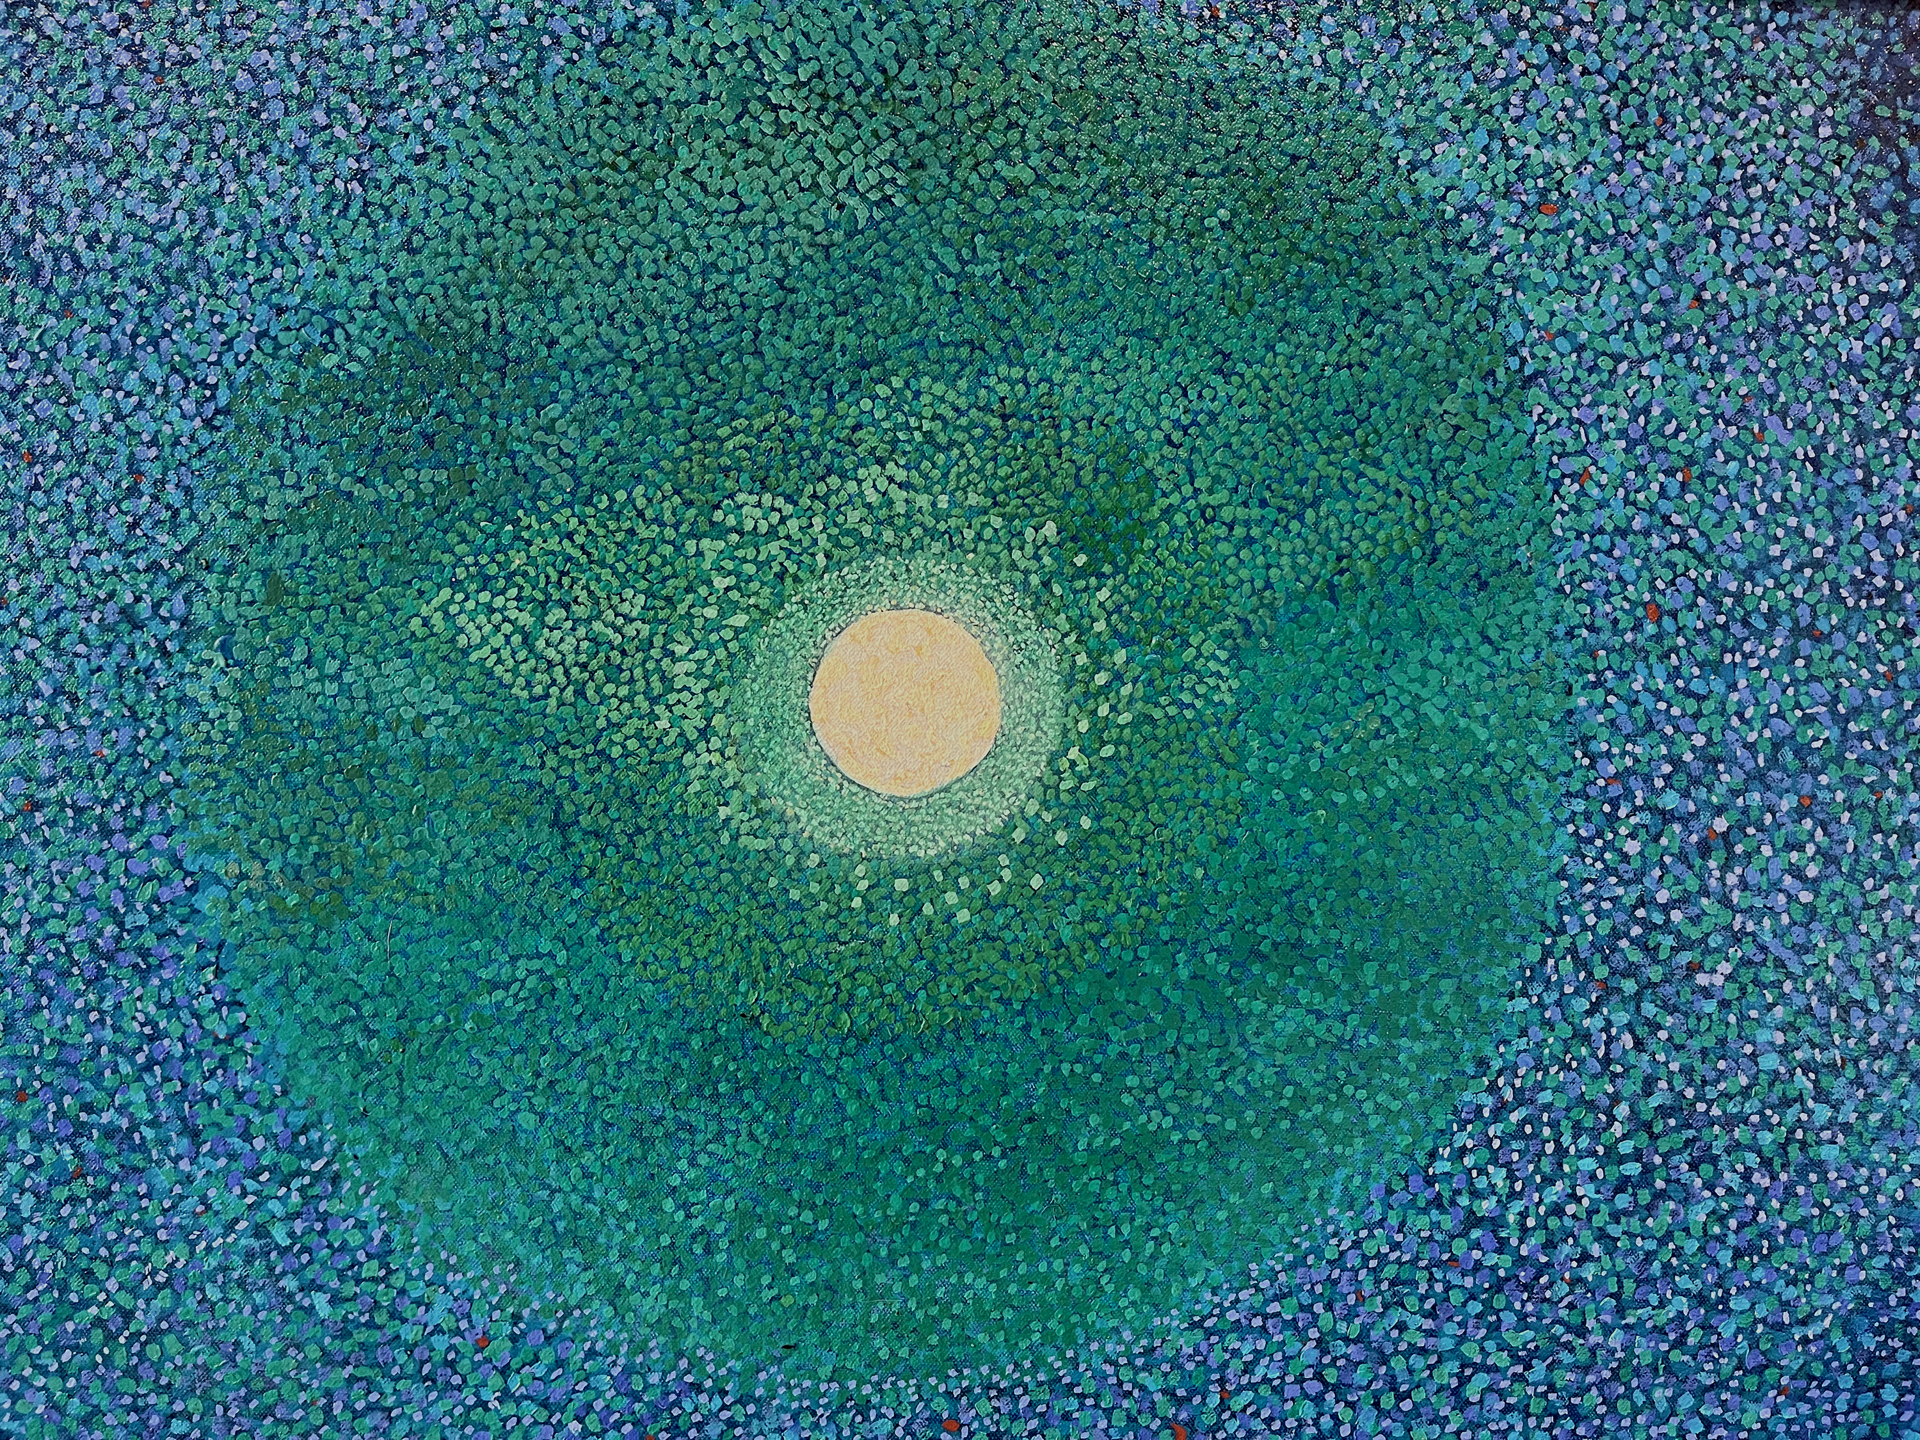 Moonlit Sands by H.M. Saffer II